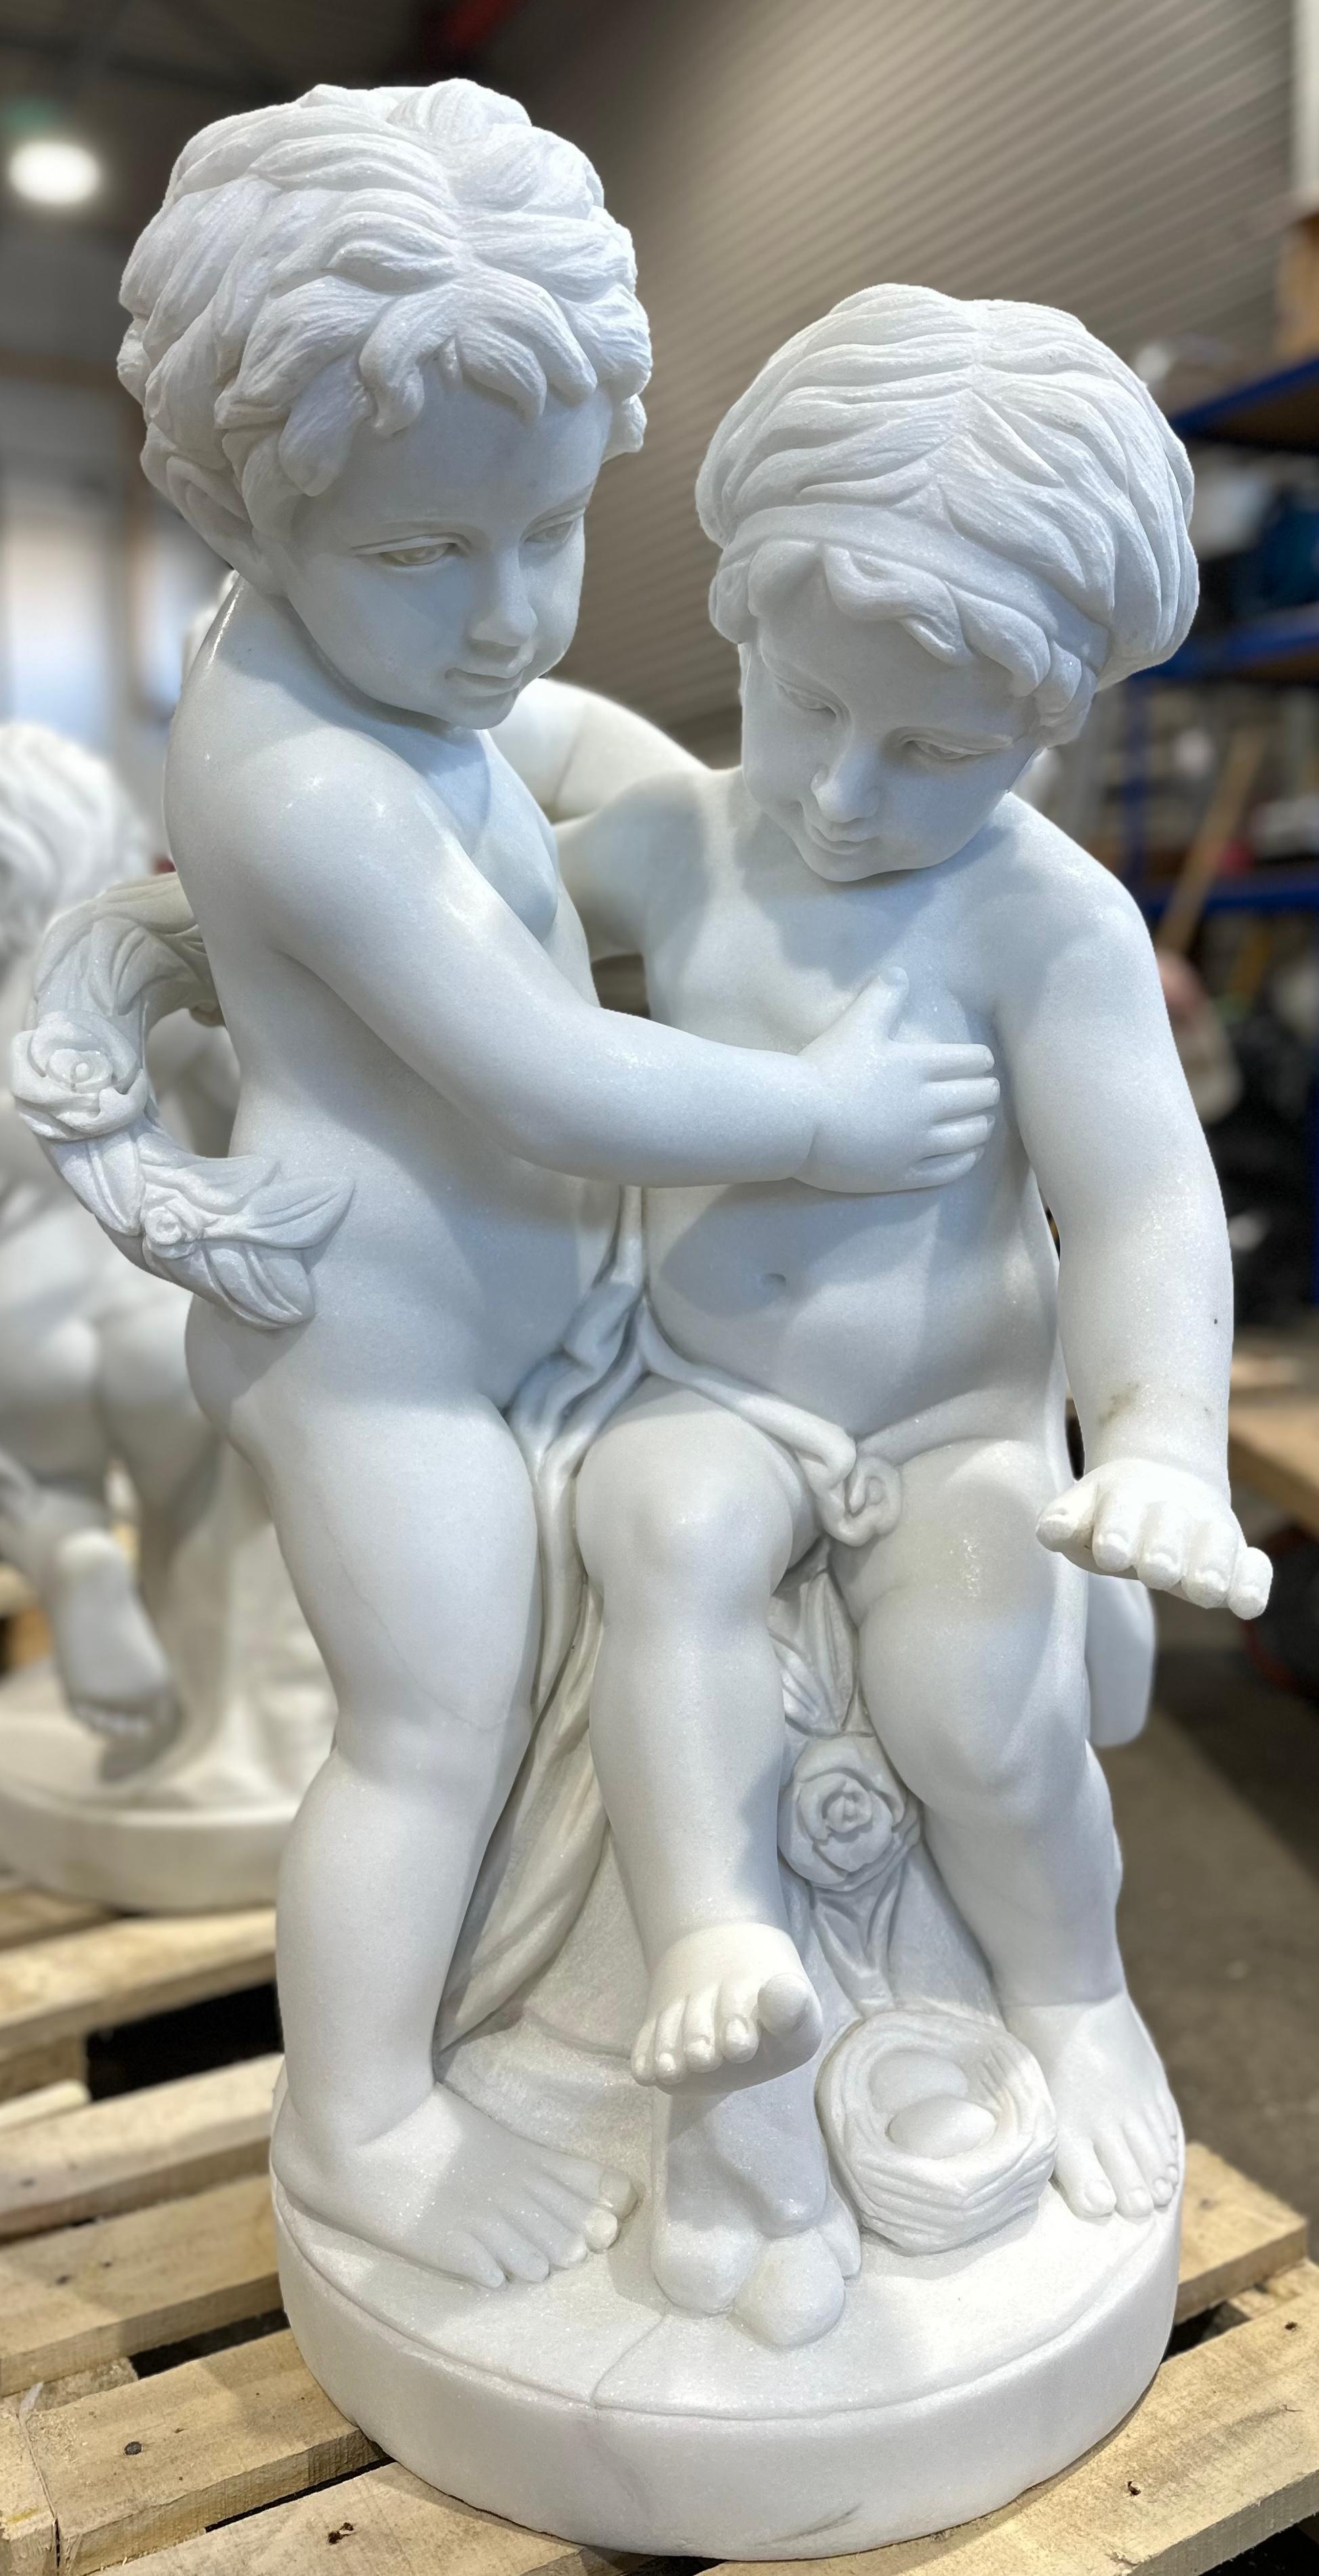 Eine bezaubernde Skulptur aus weißem Marmor, die zwei kindliche Putten darstellt, die eine stehend, die andere sitzend, um die ein Blumenkranz gewickelt ist. Und ein Vogelnest mit zwei Eiern zu ihren Füßen. 
Die Schnitzerei ist gut gemacht und